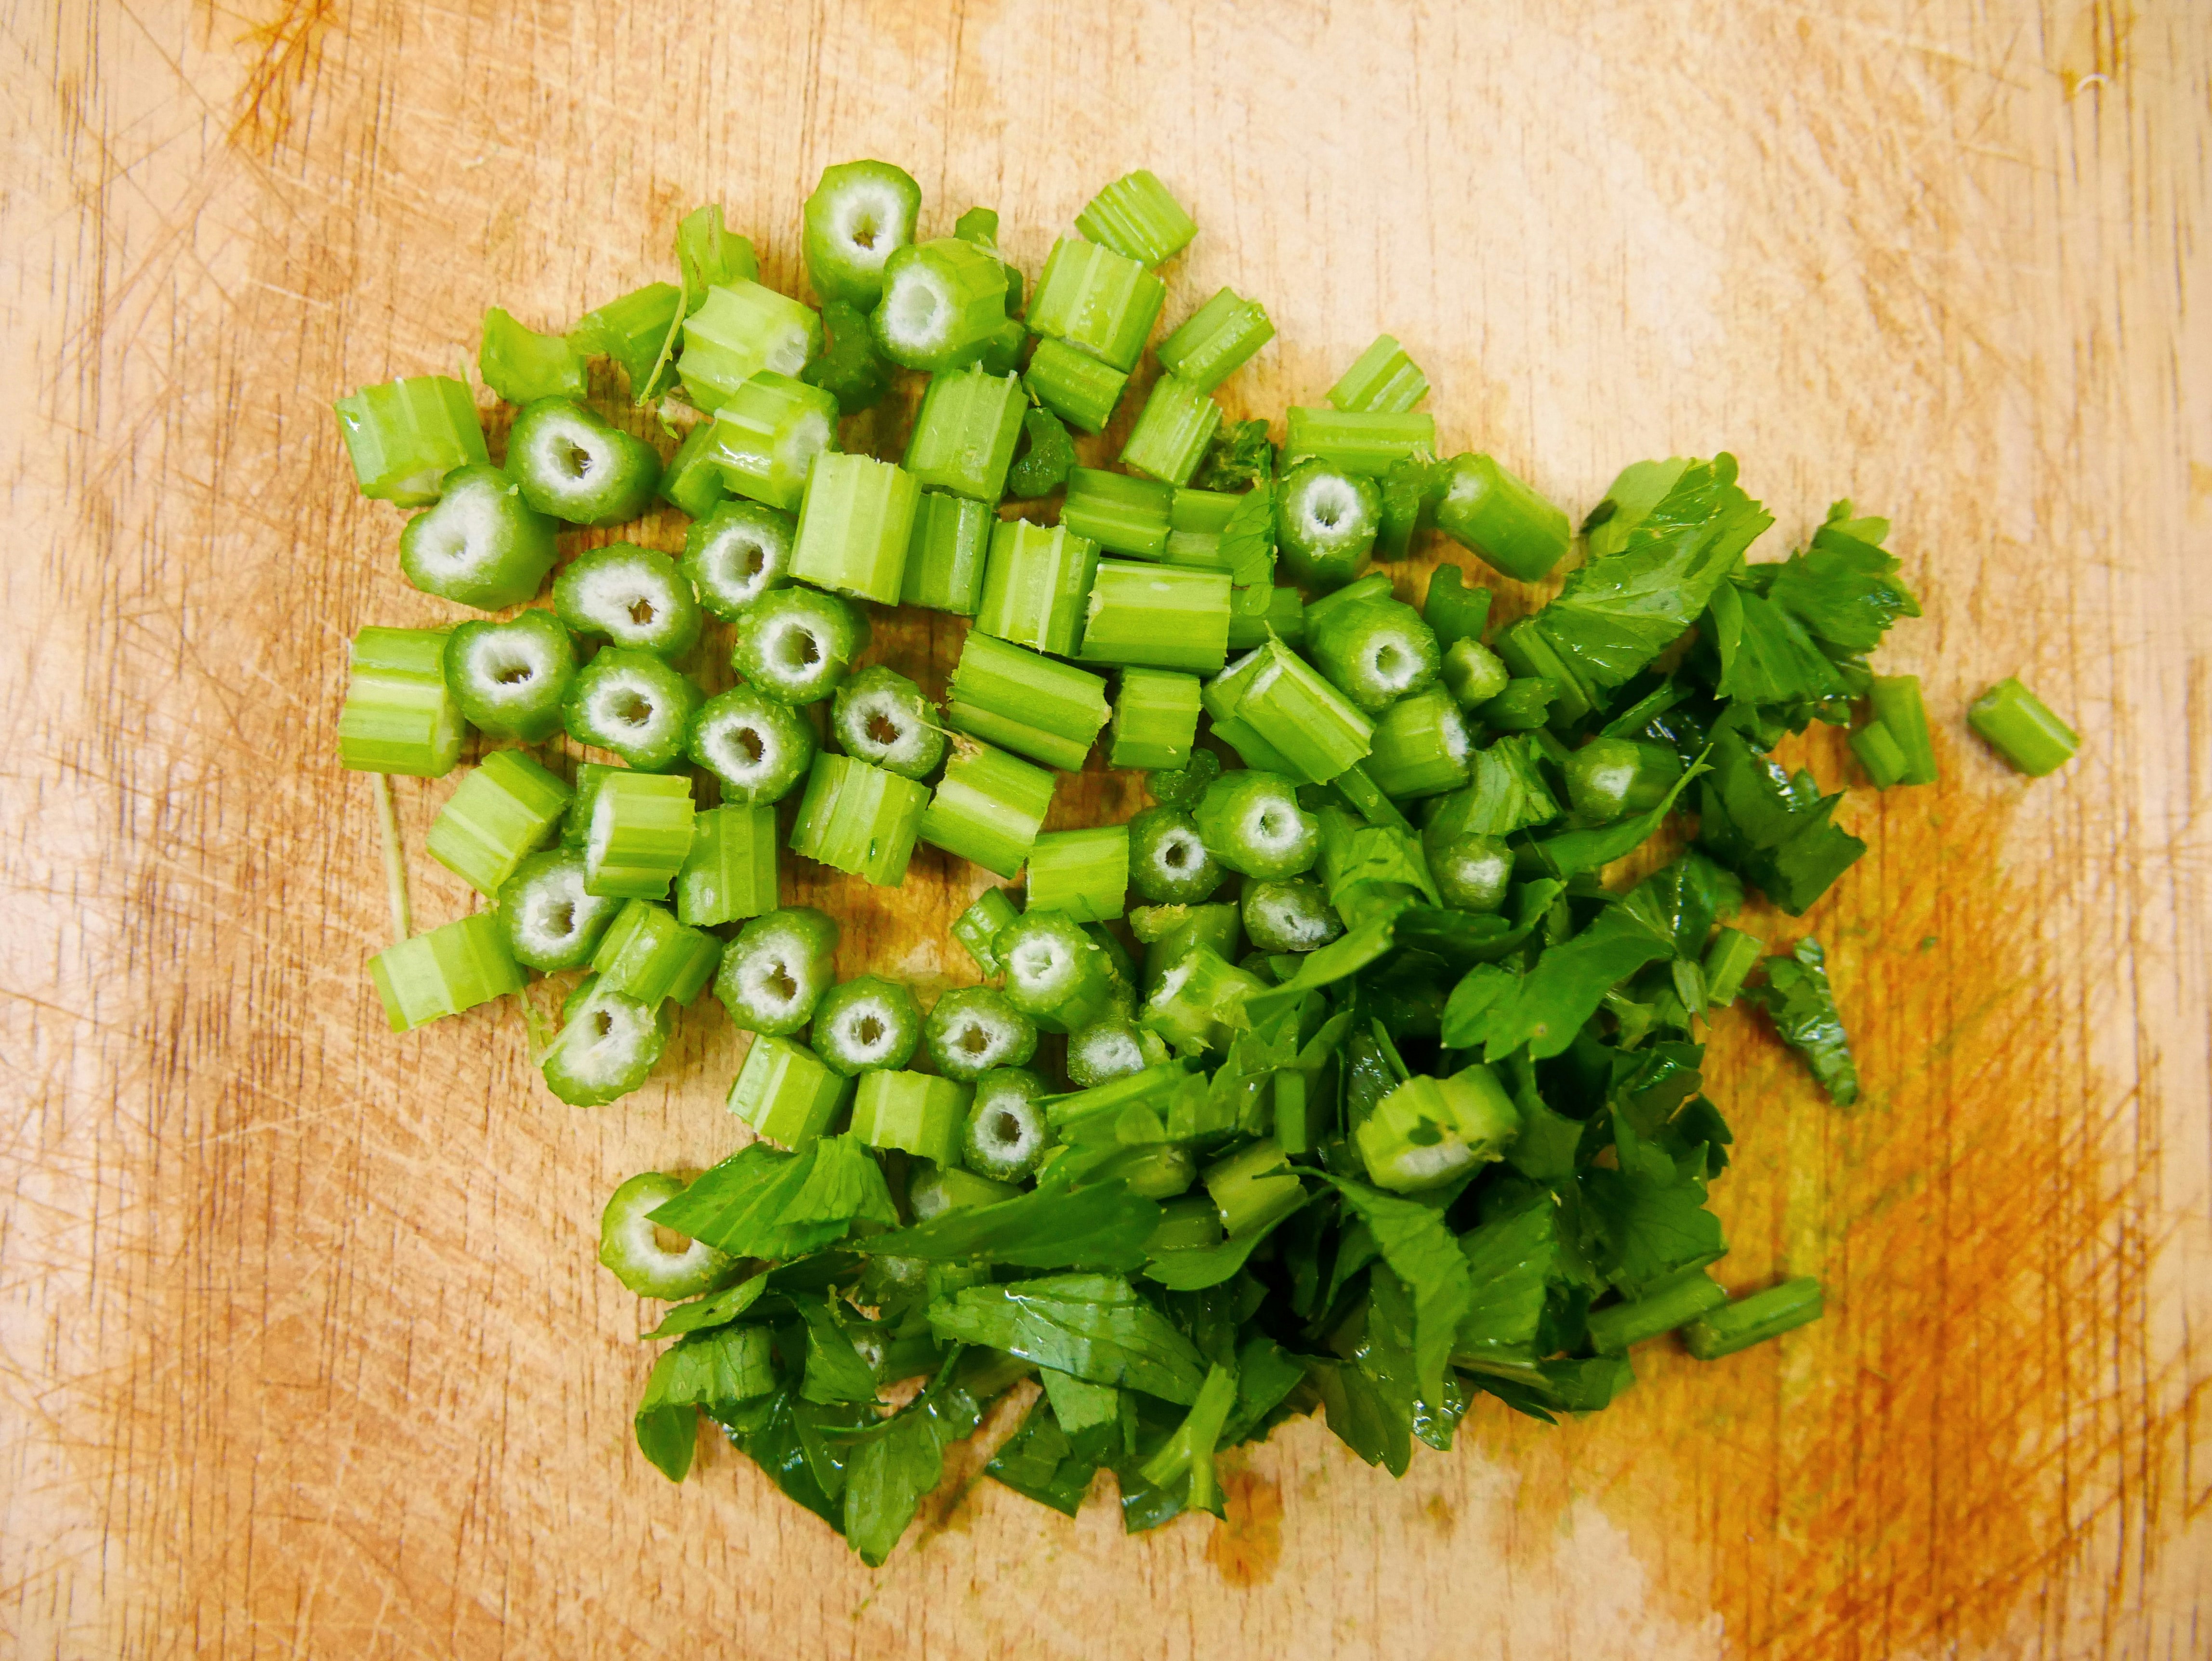 Image of chopped celery.